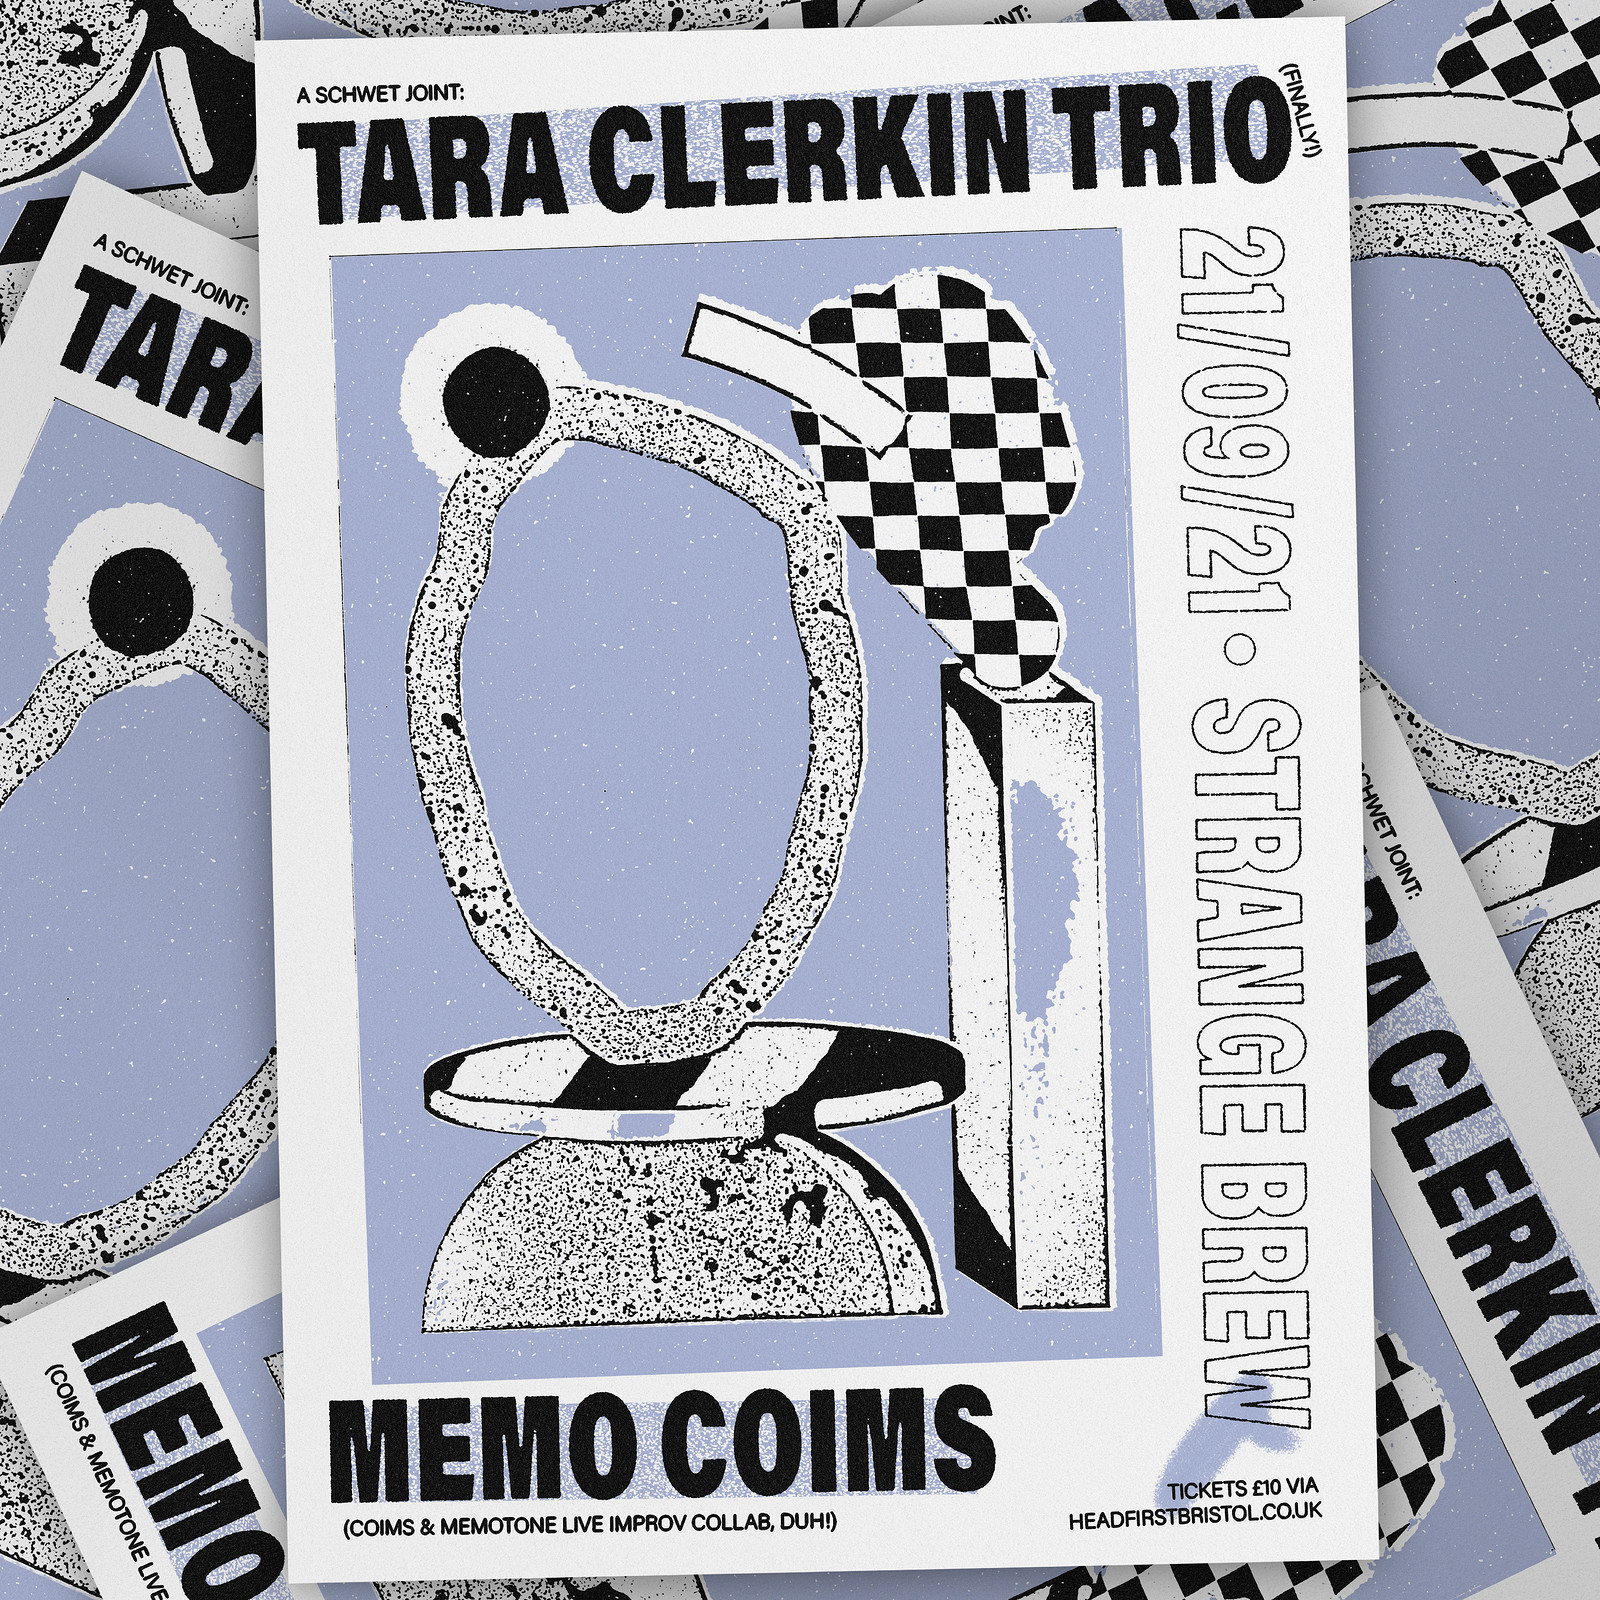 Schwet with Tara Clerkin Trio & Memo Coims at Strange Brew